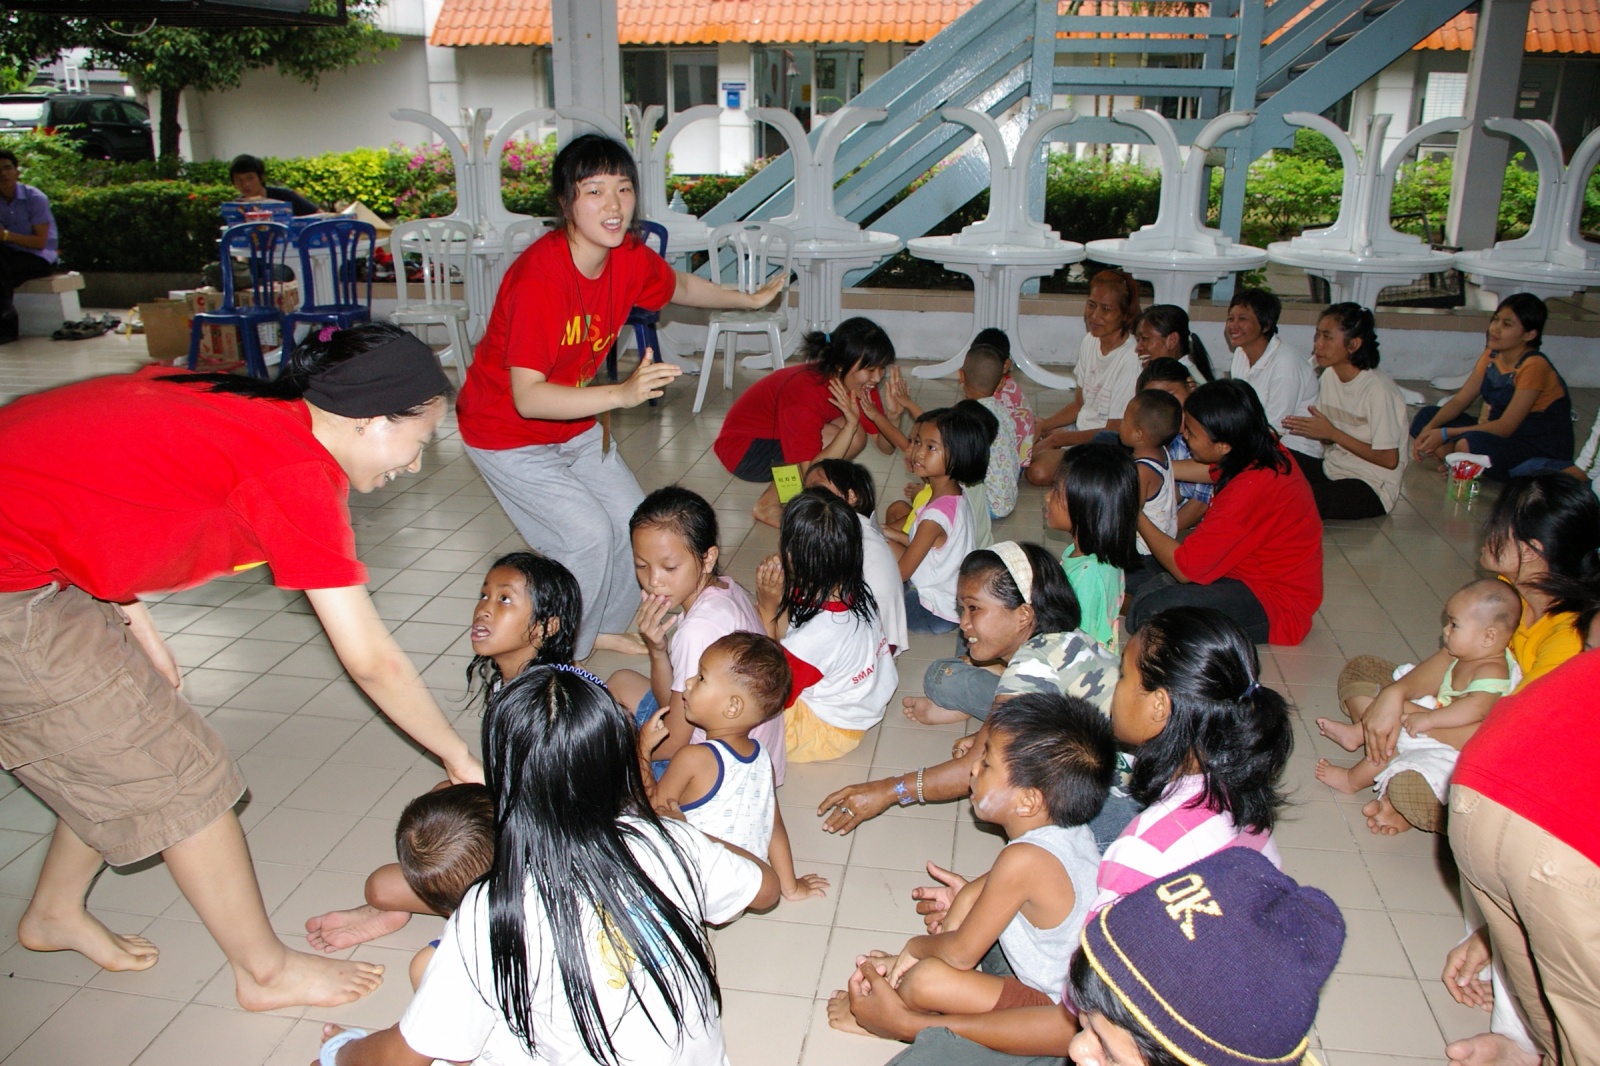 IMGP3129.JPG : 2006년 태국 단기선교